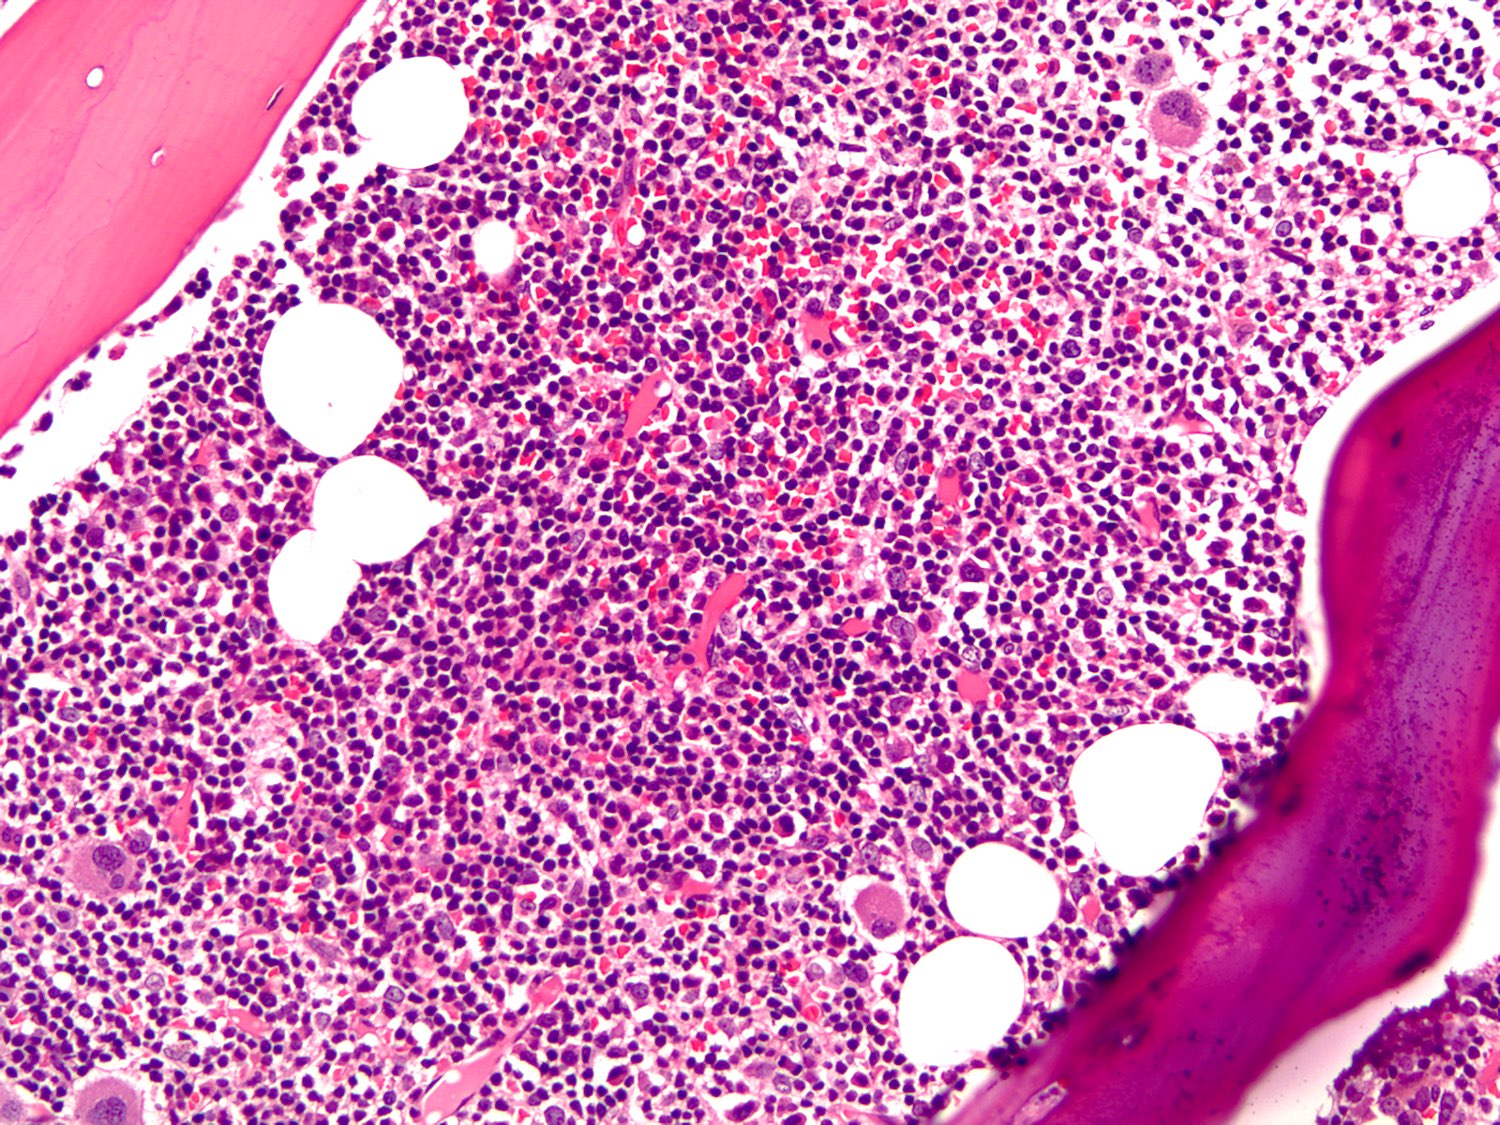 lymphoid papillomatosis pathology outlines